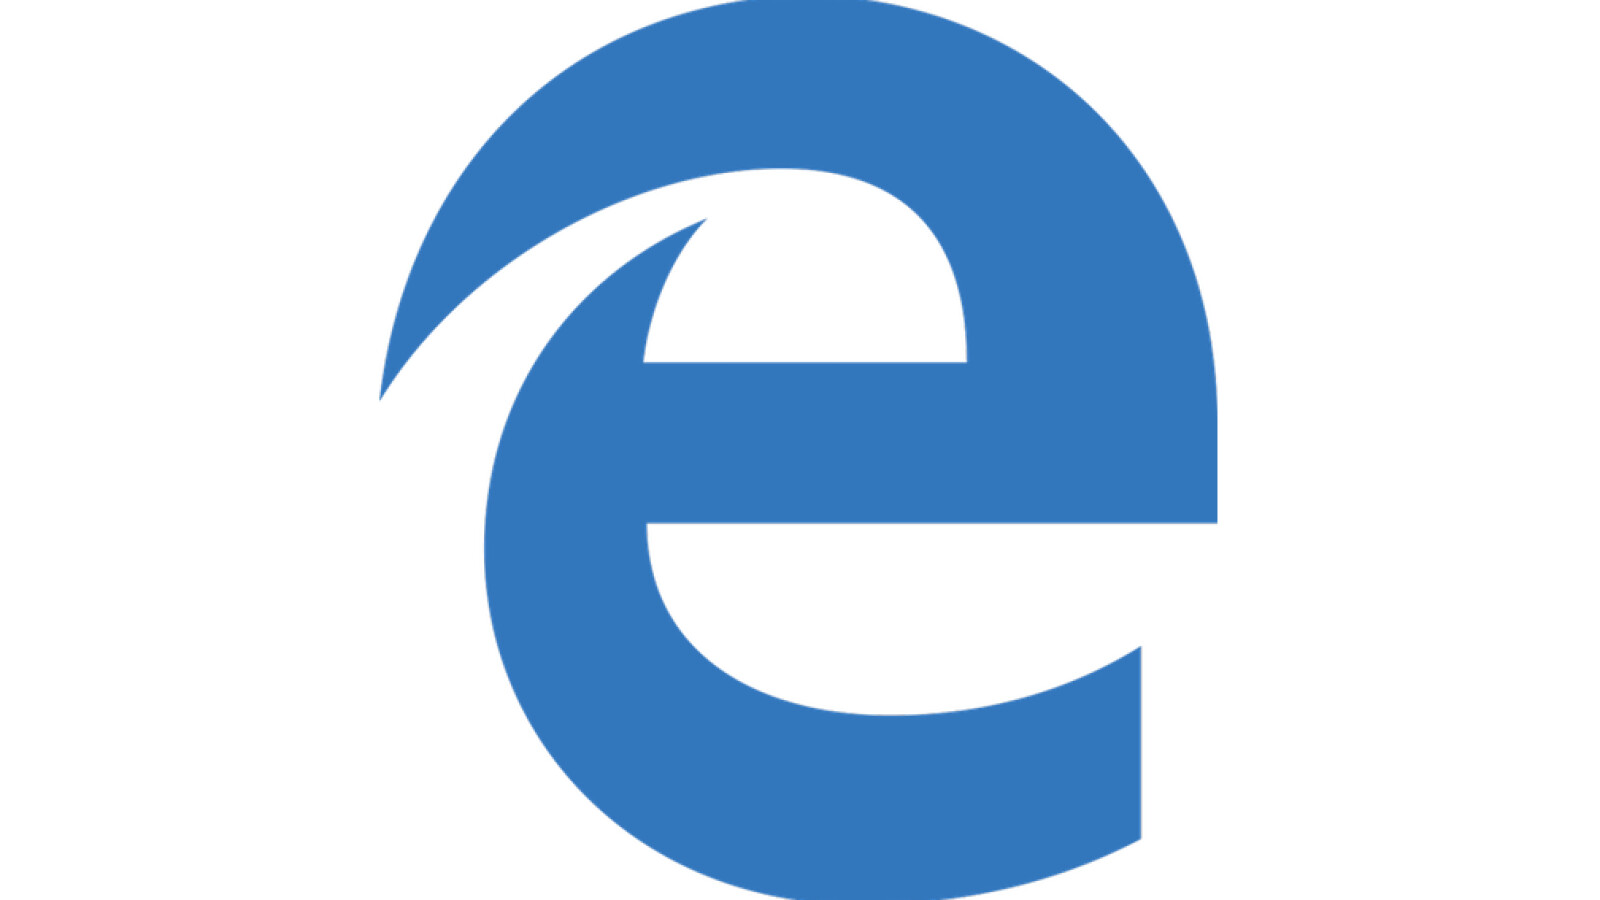 Windows 10 Update Im Januar Microsoft Edge Browser Wird Durch Chromium Version Ersetzt Netzwelt